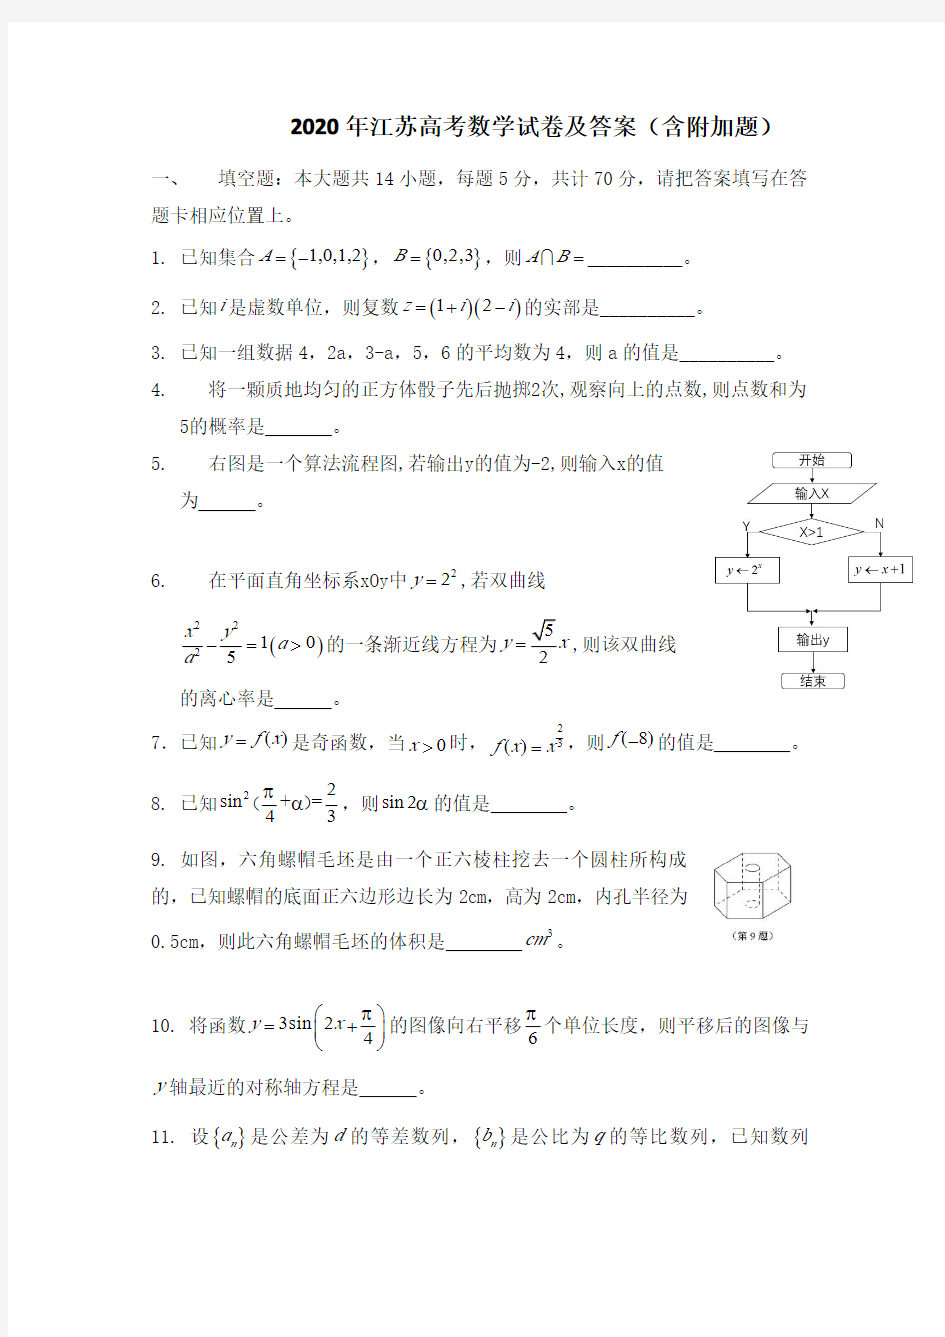 2020年江苏高考数学试卷及答案(含附加题)